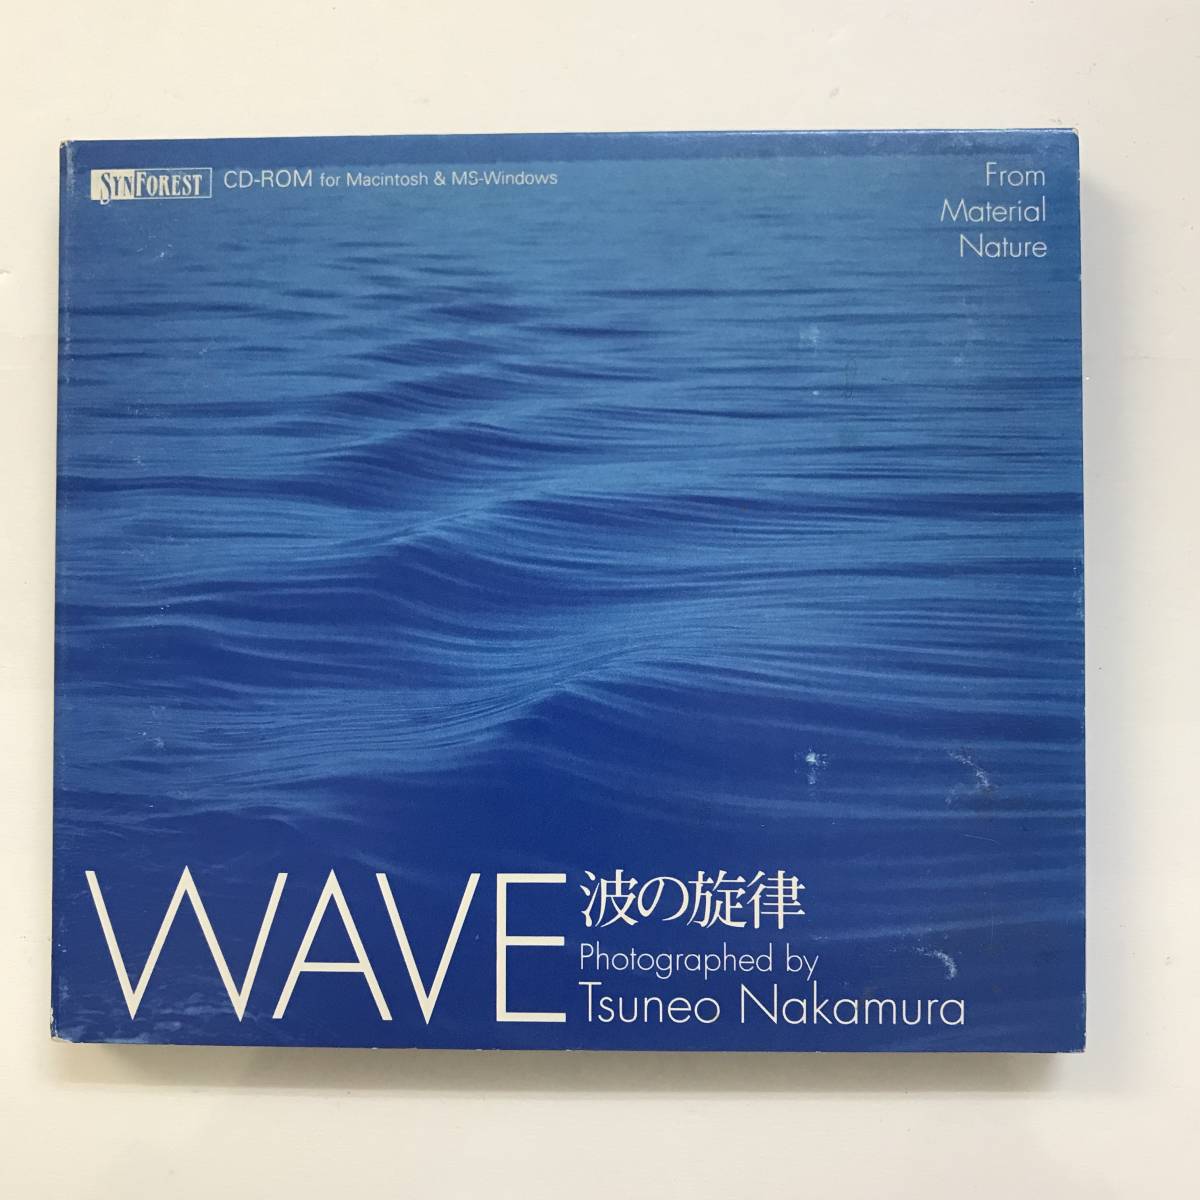 【CD】WAVE 波の旋律 中村庸夫 Windows3.1/95/Mac漢字Talk7以降 @SO-77-Aの画像1